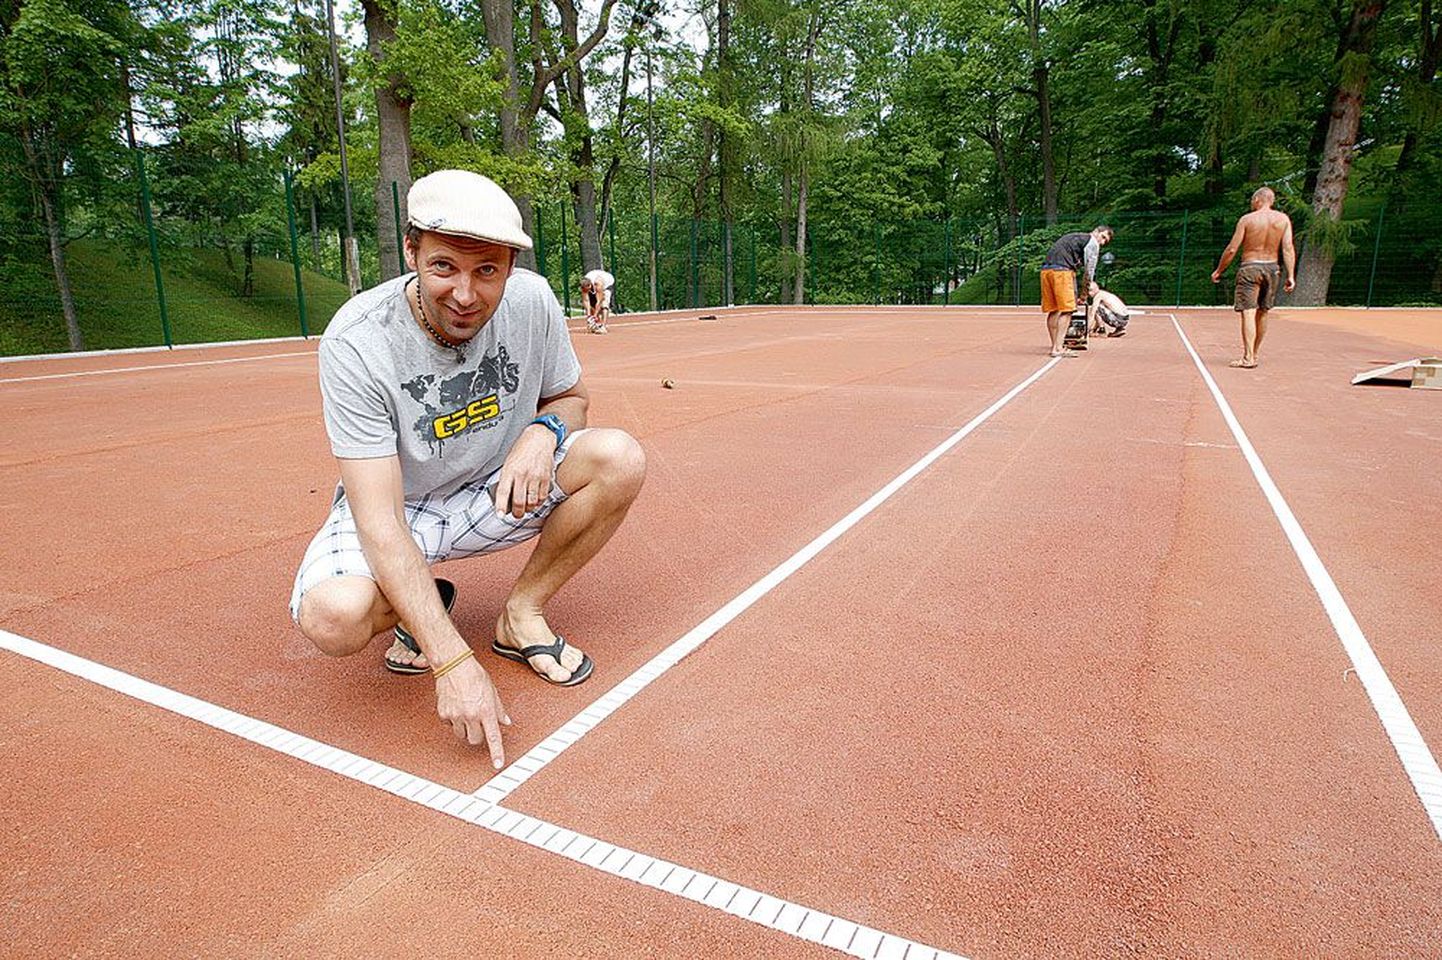 OÜ Toome Tennis juhatuse liige Juhan Peedimaa näitab uue tenniseväljaku jooni, mis kleebitakse tugevalt väljakukatte külge. «Need ei liigu paigast ära ja nende taha ei jää jalg kinni,» sõnas Peedimaa.